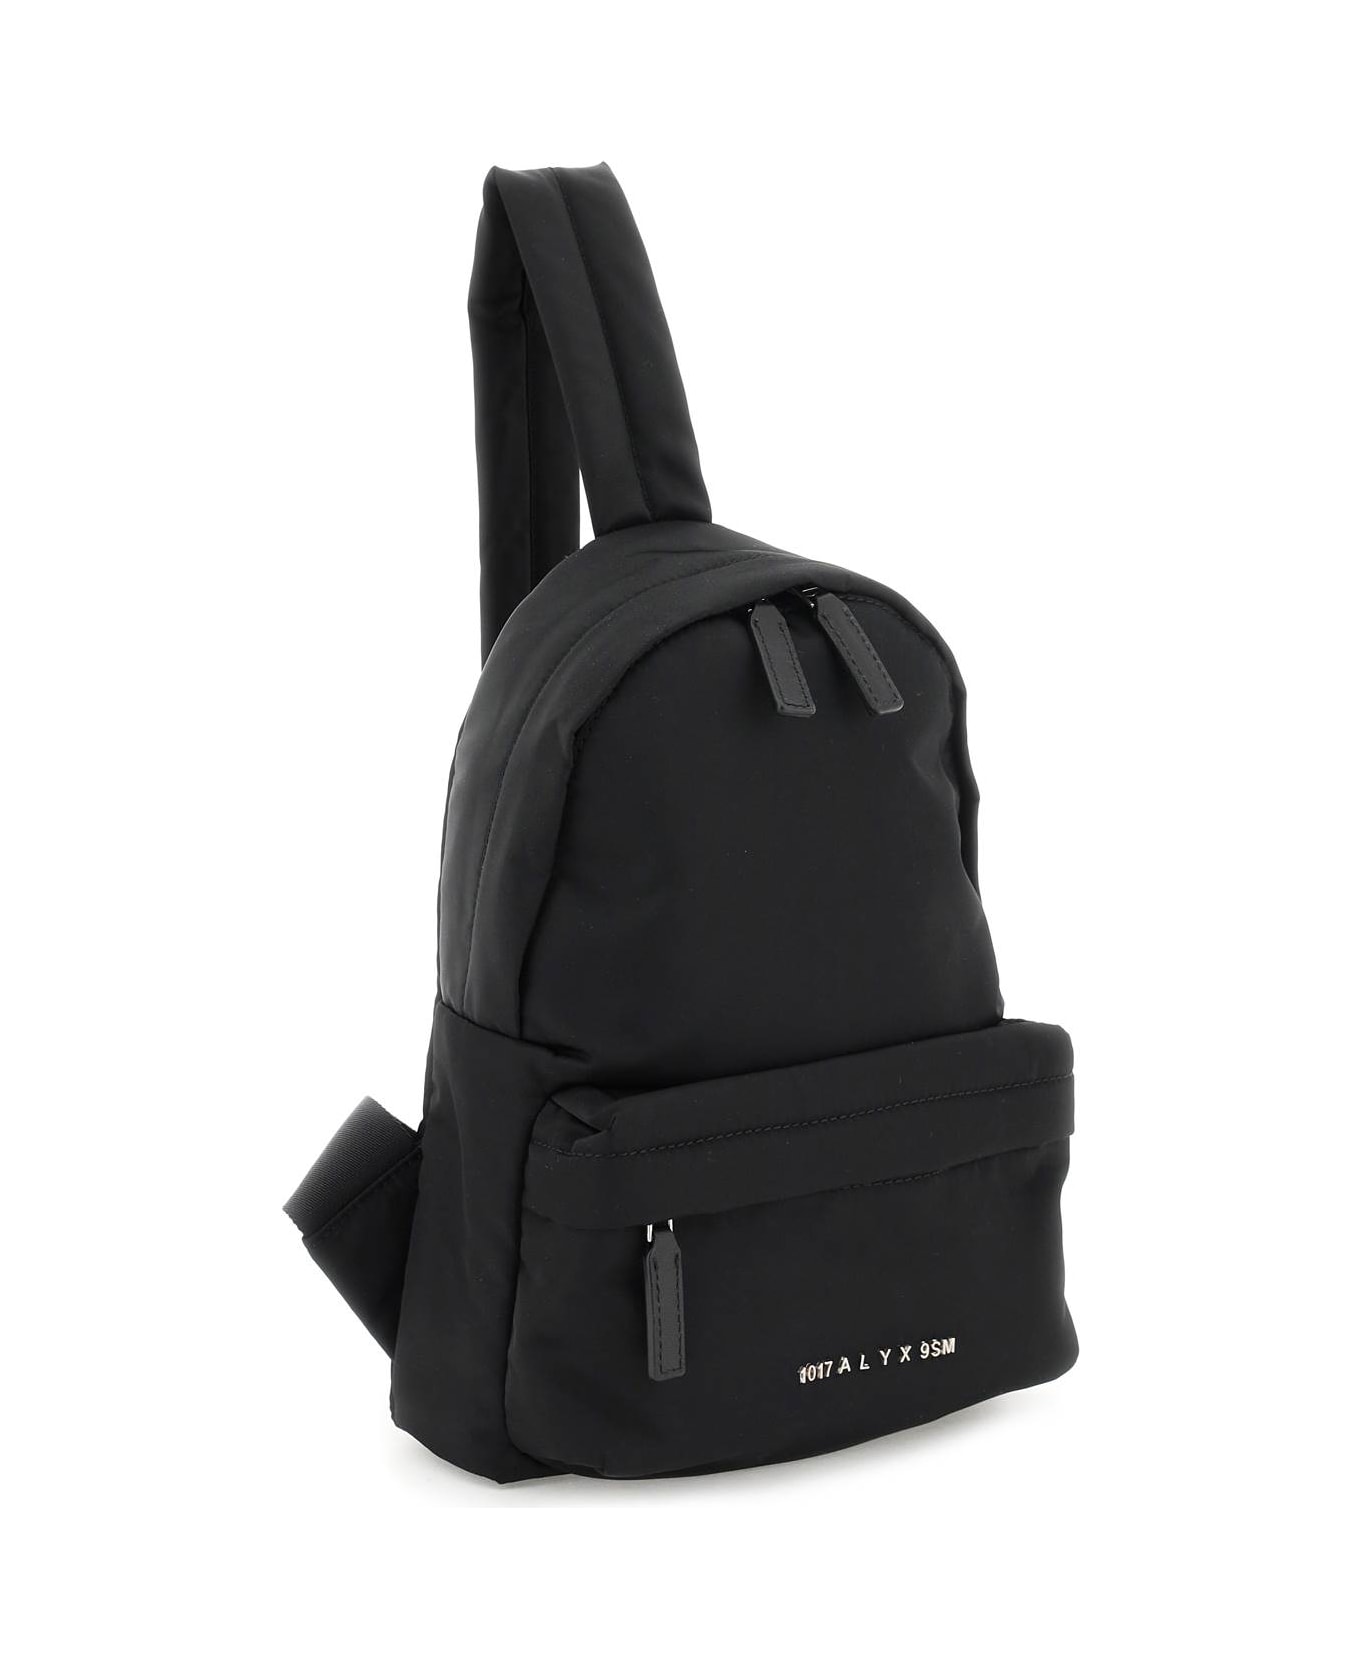 1017 ALYX 9SM One-shoulder Bakcpack - BLACK (Black) ベルトバッグ